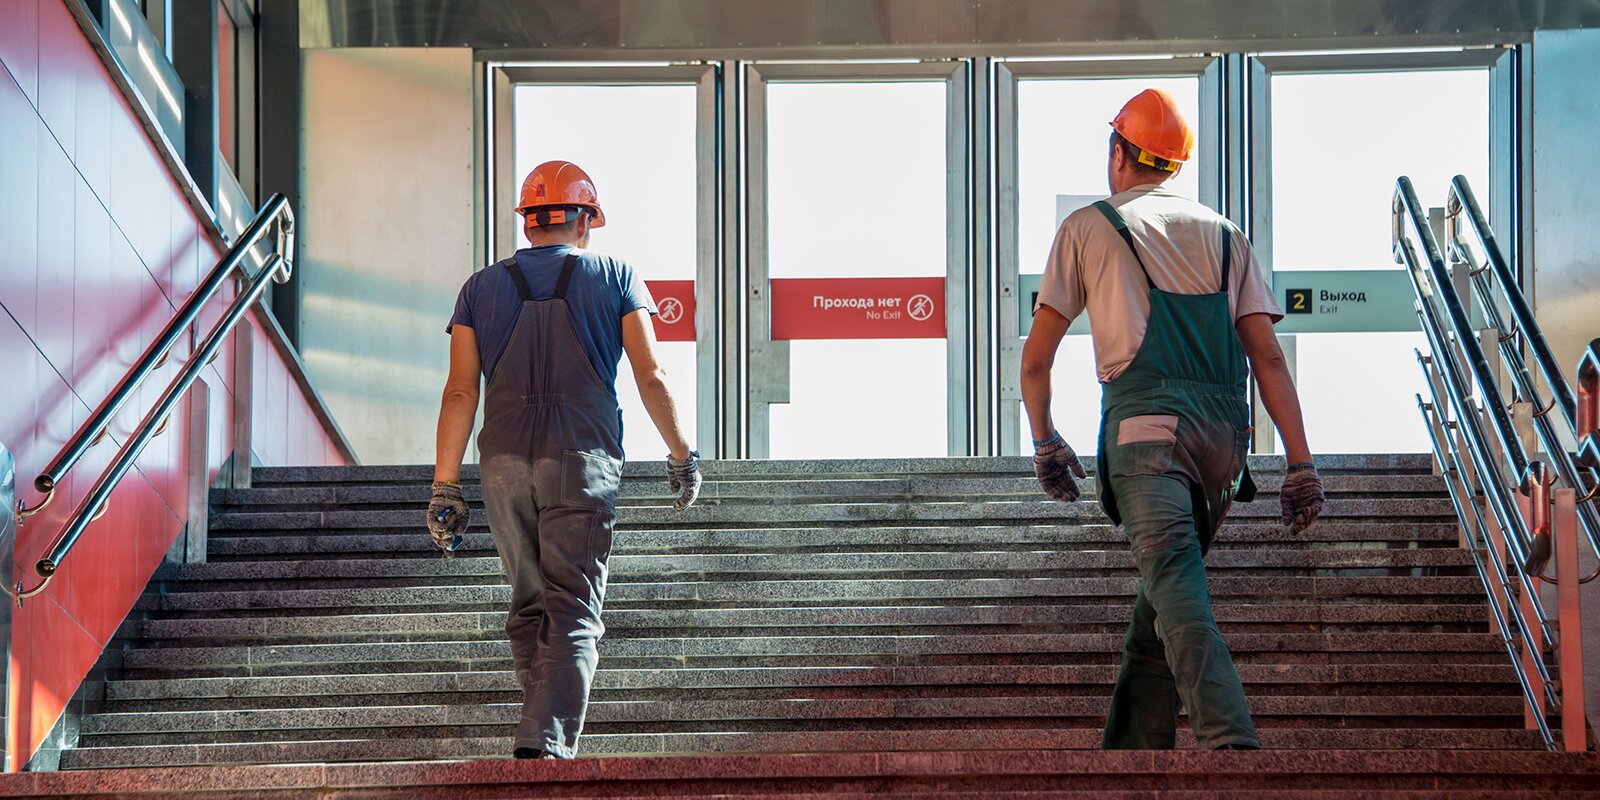 Когда откроется «ЗИЛ»: На территории промзоны скоро откроется новая станция метро